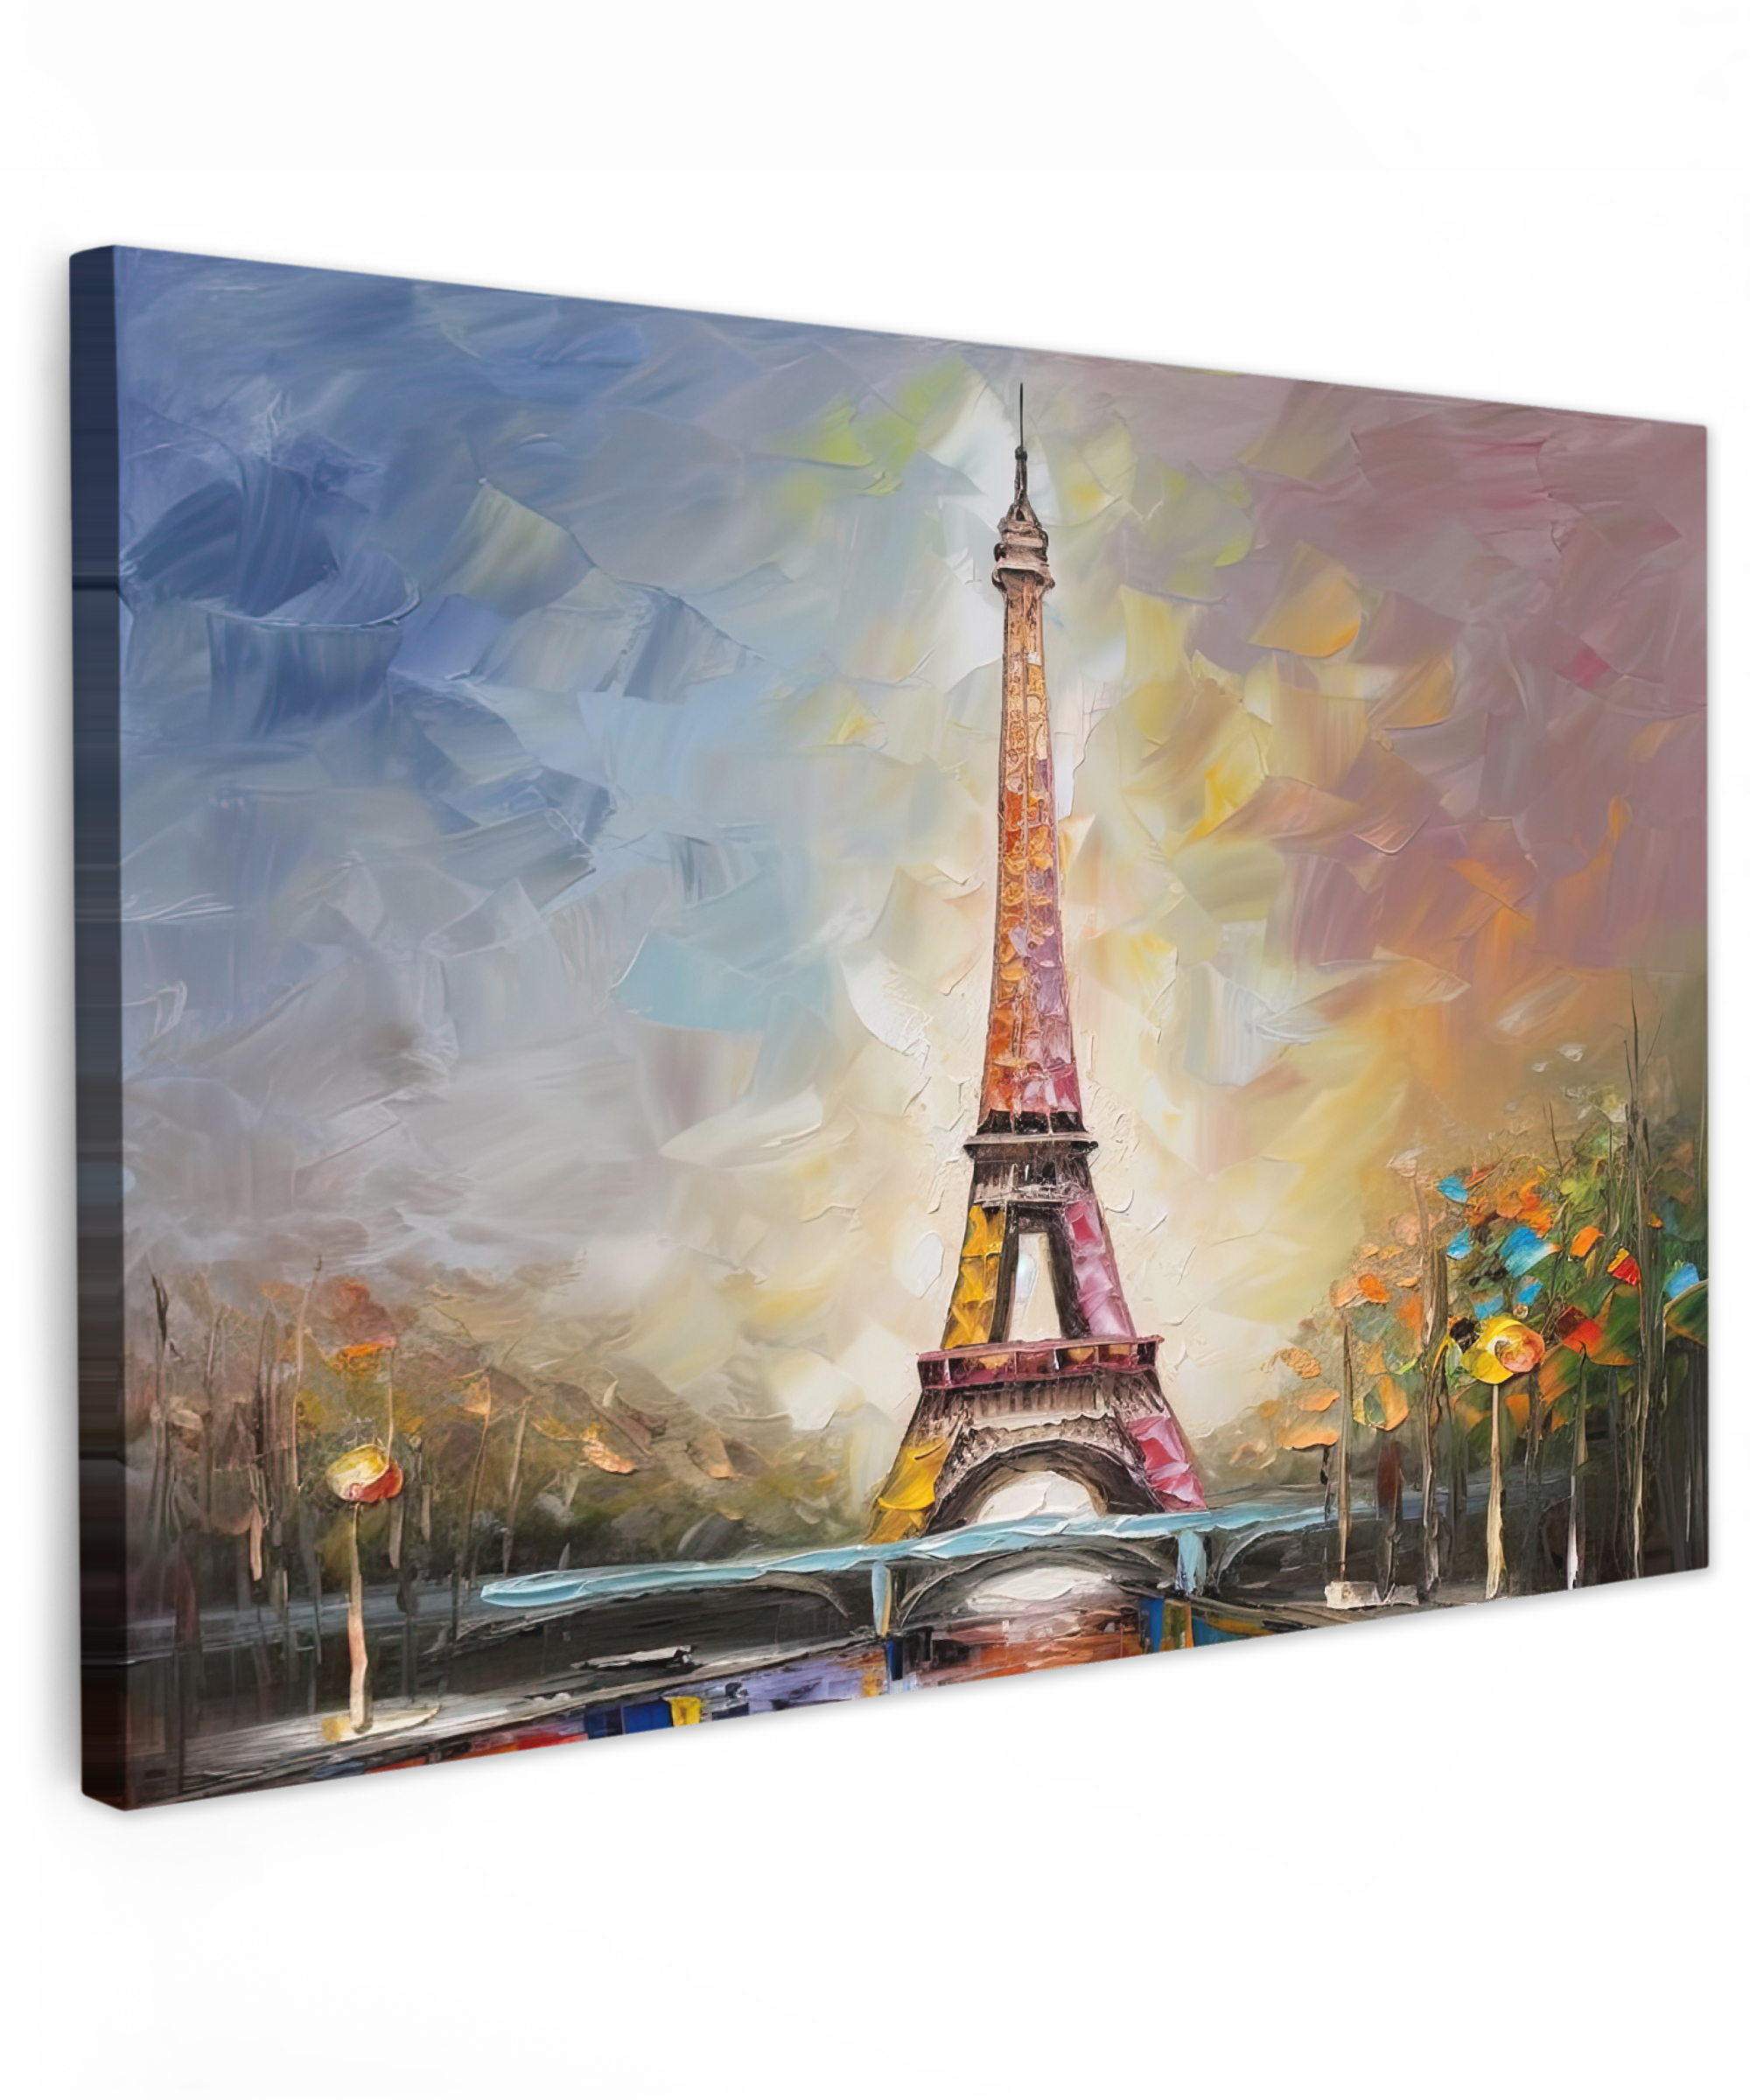 Canvas schilderij - Eiffeltoren - Schilderij - Olieverf - Parijs